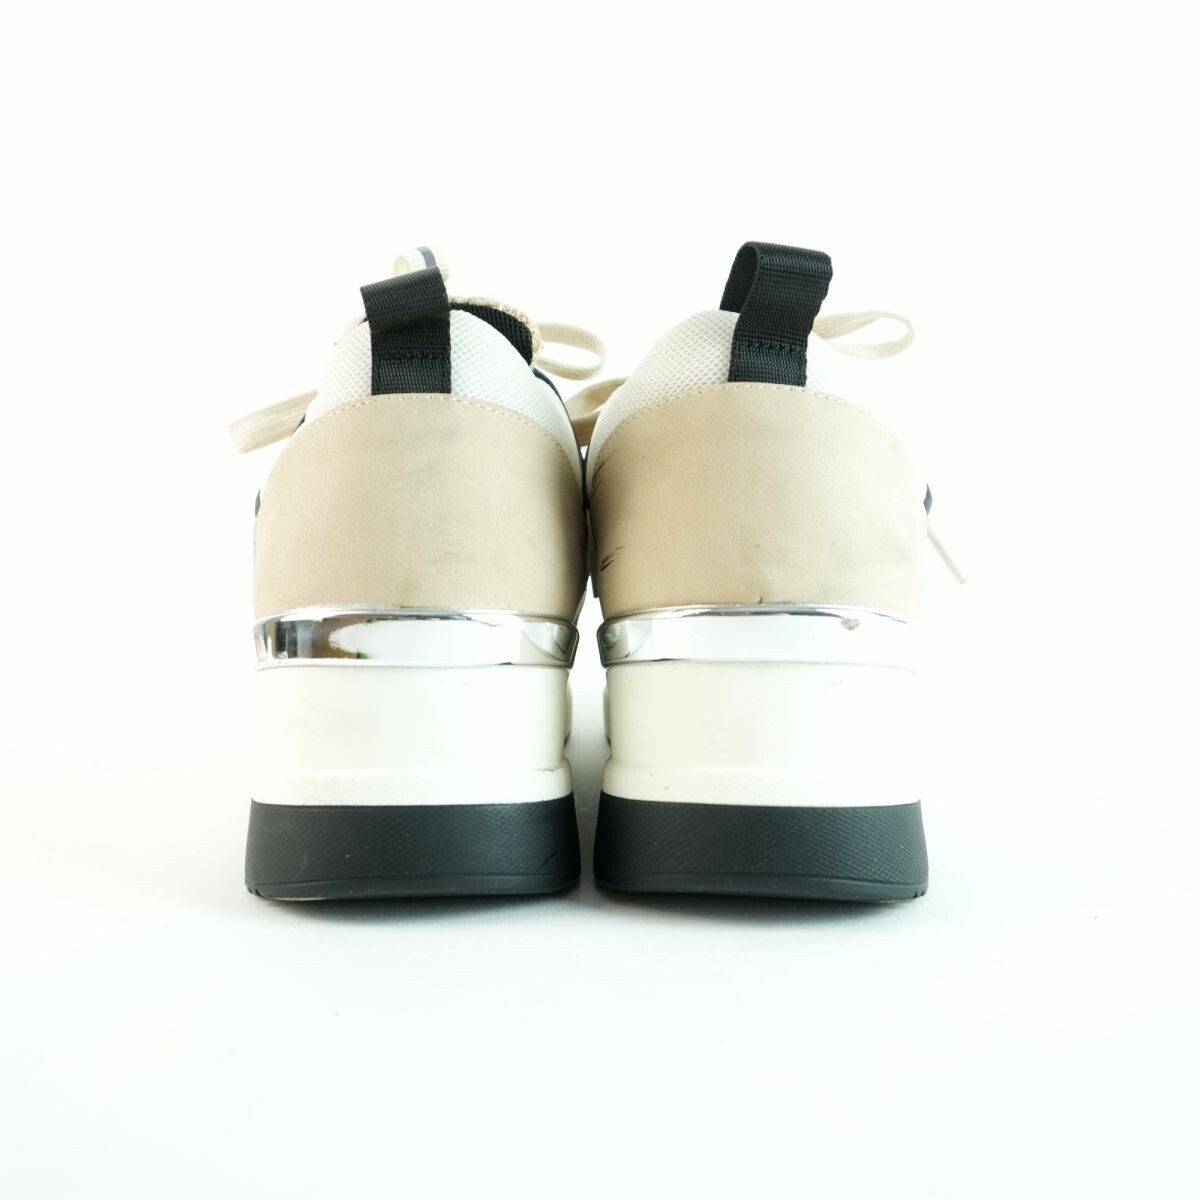 KATHARINE HAMNETT LONDON Katharine Hamnett London 24.0 sneakers tweed leather beige /NC30